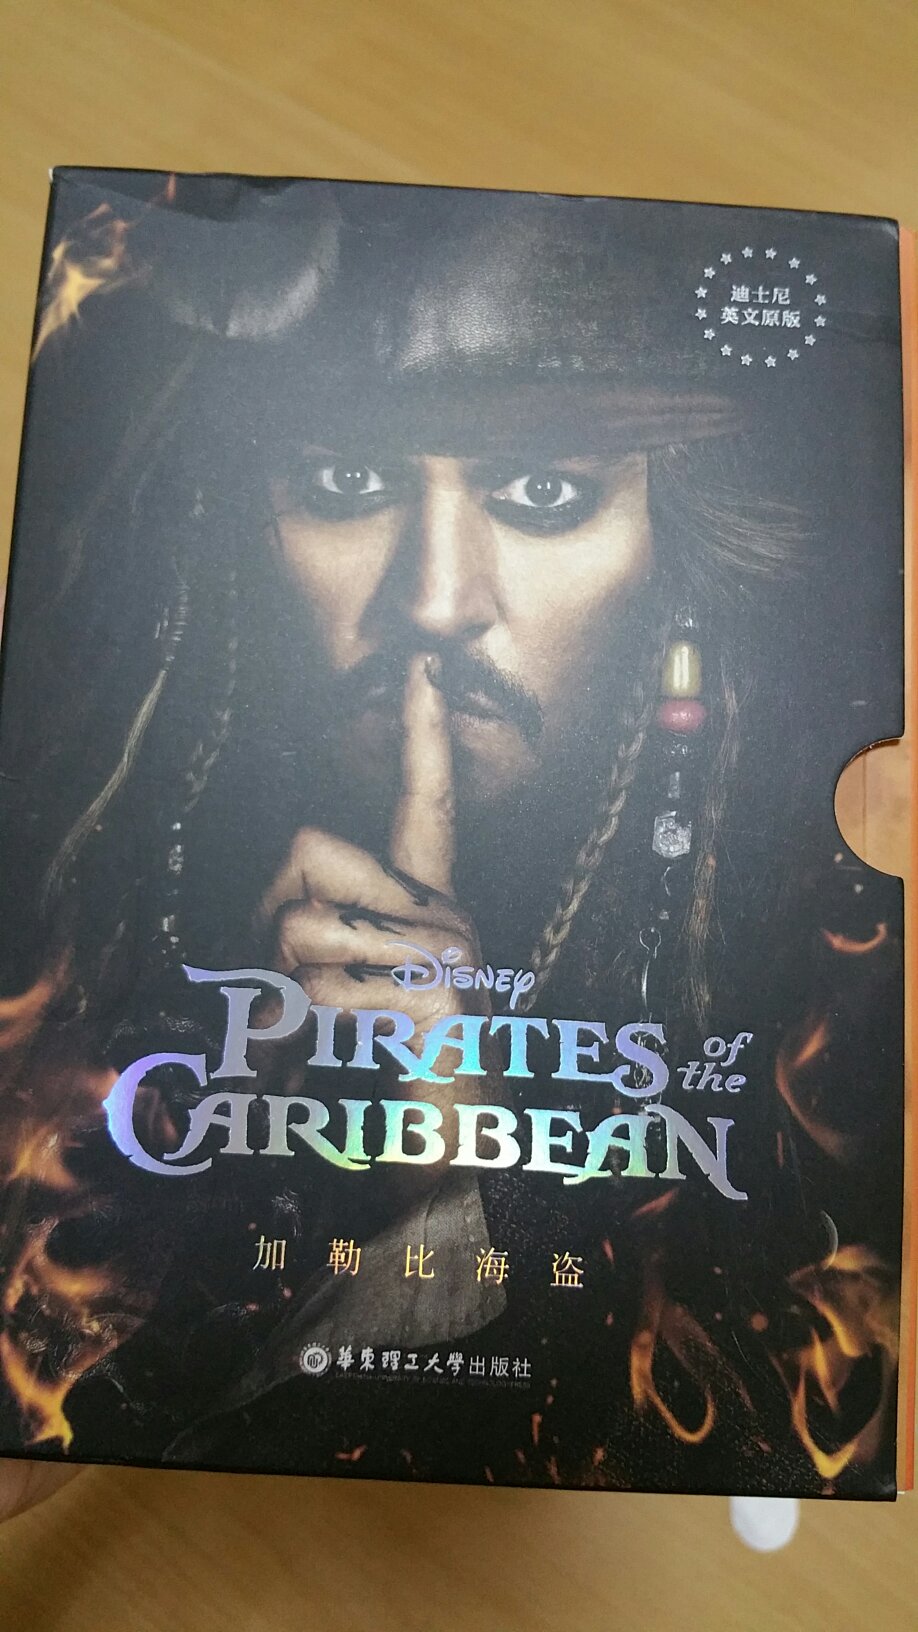 挺好，很喜欢这套书，也很喜欢加勒比海盗系列的电影，推荐